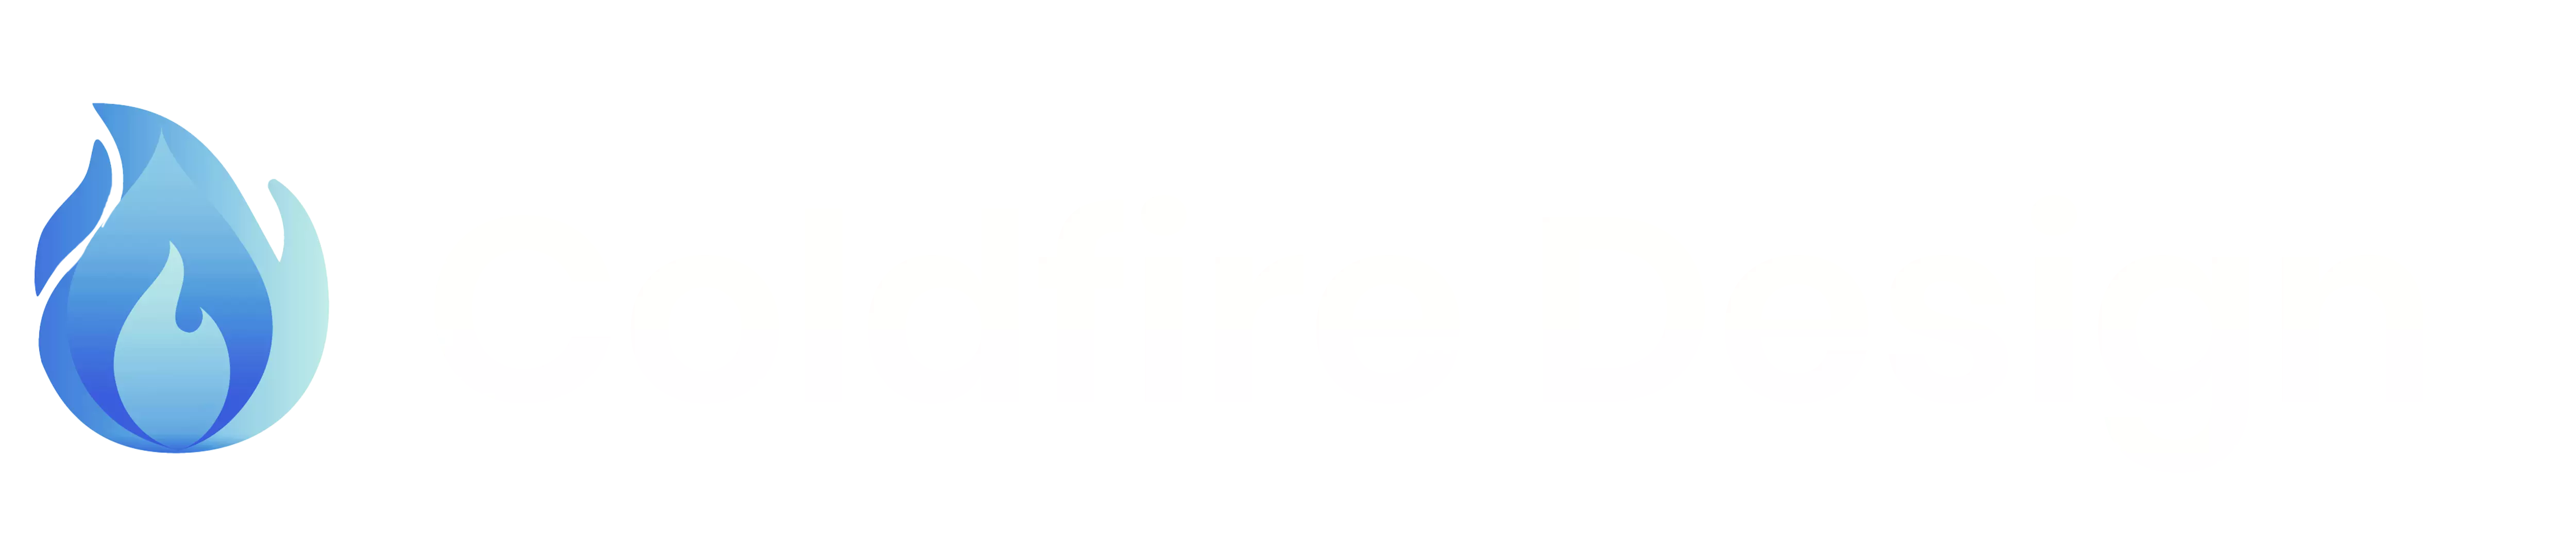 Coldfire Design Logo